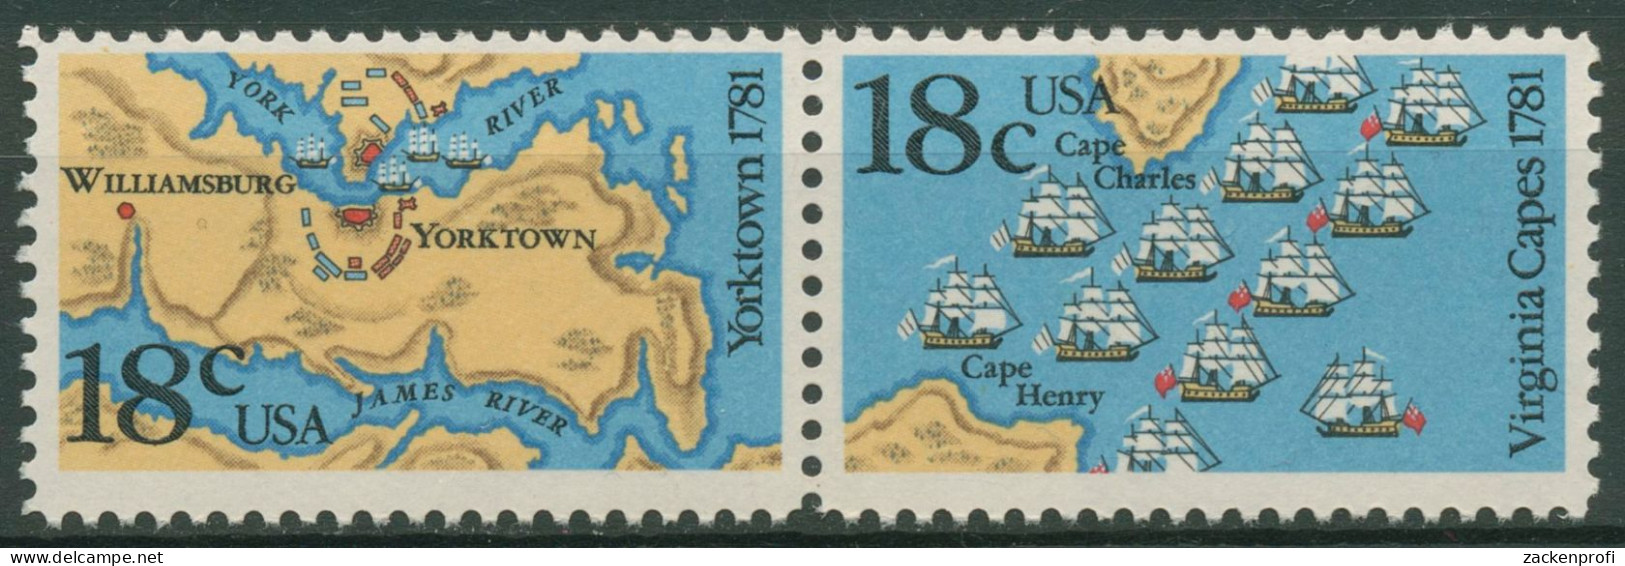 USA 1981 Seeschlacht Chesapeake Bay & Yorktown 1511/12 ZD Postfrisch - Ungebraucht